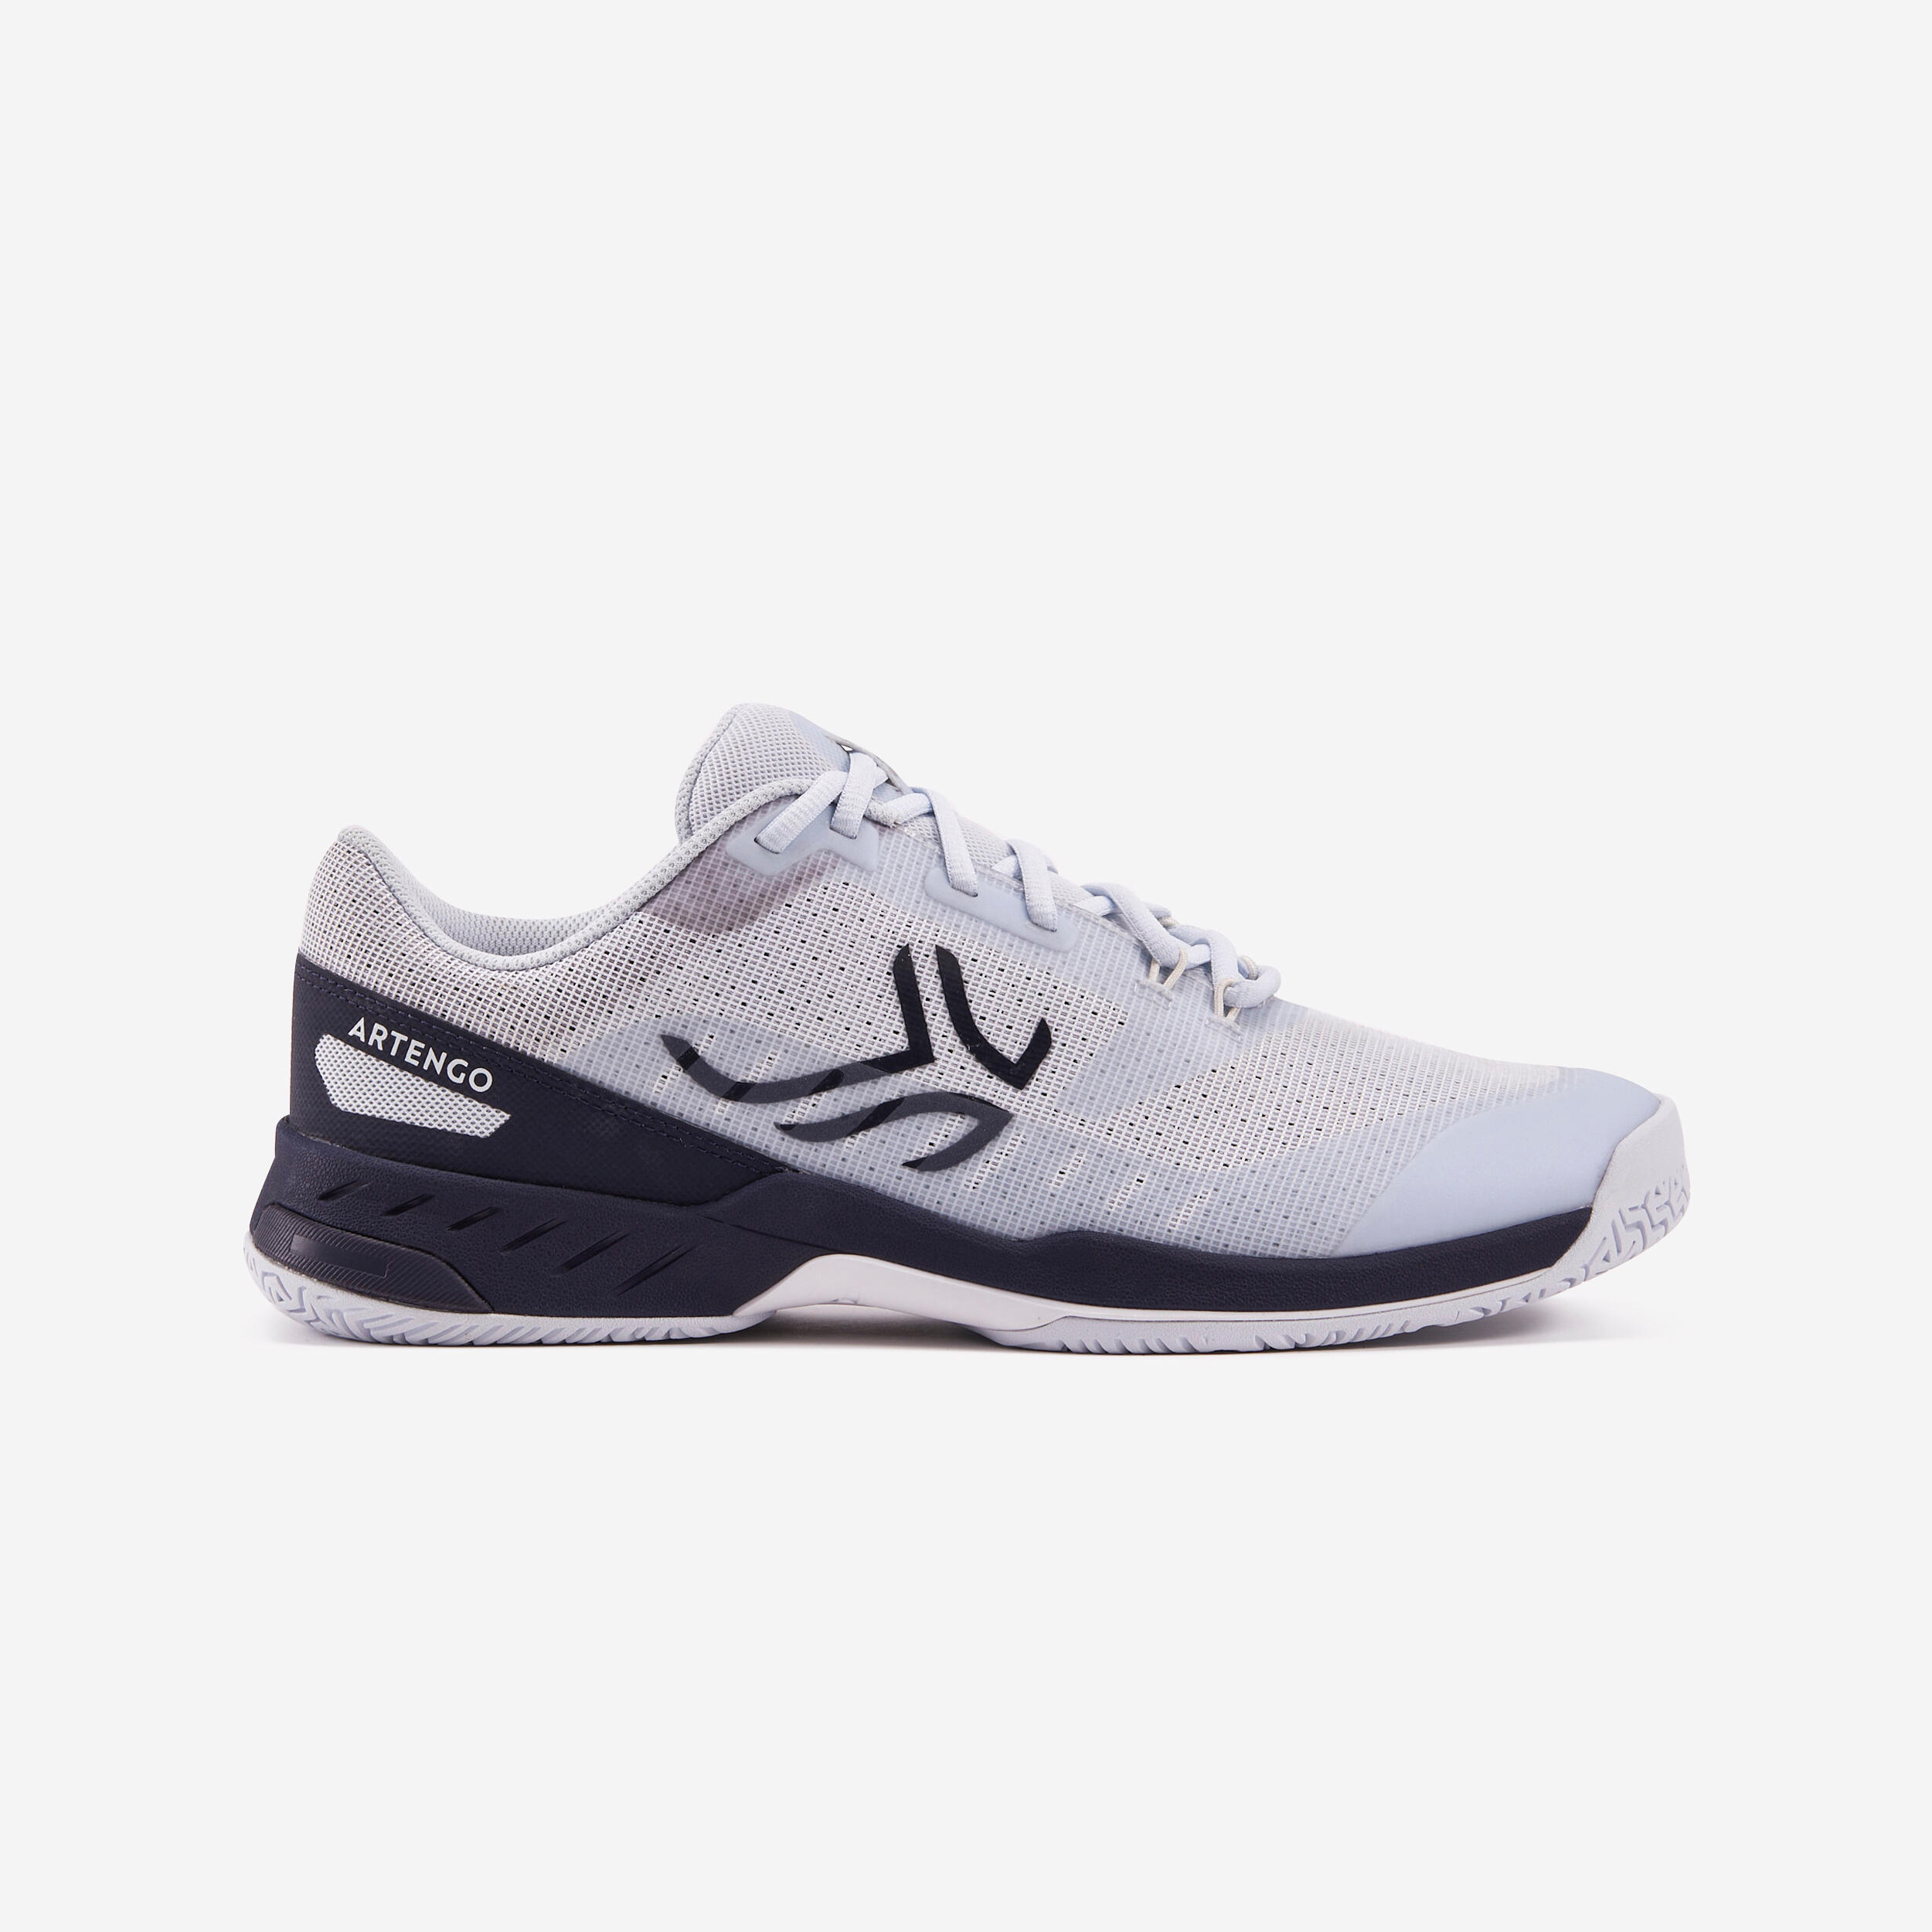 Men's Multicourt Tennis Shoes - Light Grey/Blue 1/9